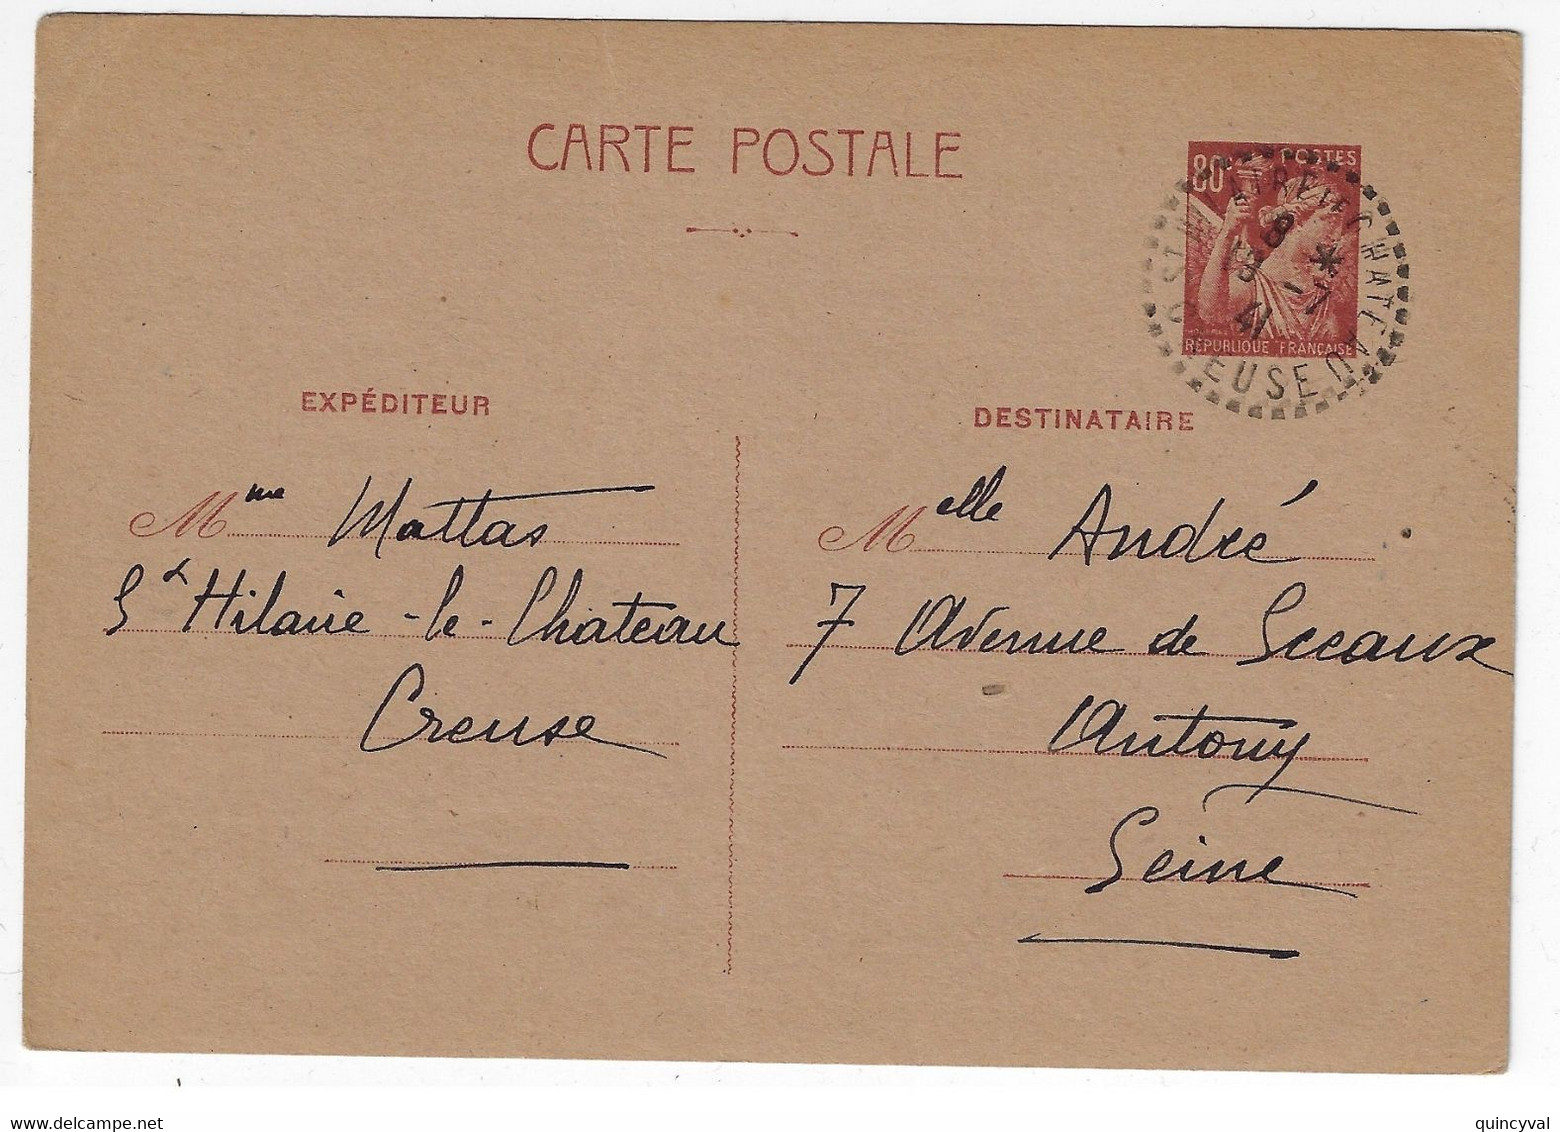 St HILAIRE Le CHÂTEAU Creuse Carte Postale Entier 80c Iris Yv 431-CP2 Ob 19 7 1941 - Postales Tipos Y (antes De 1995)